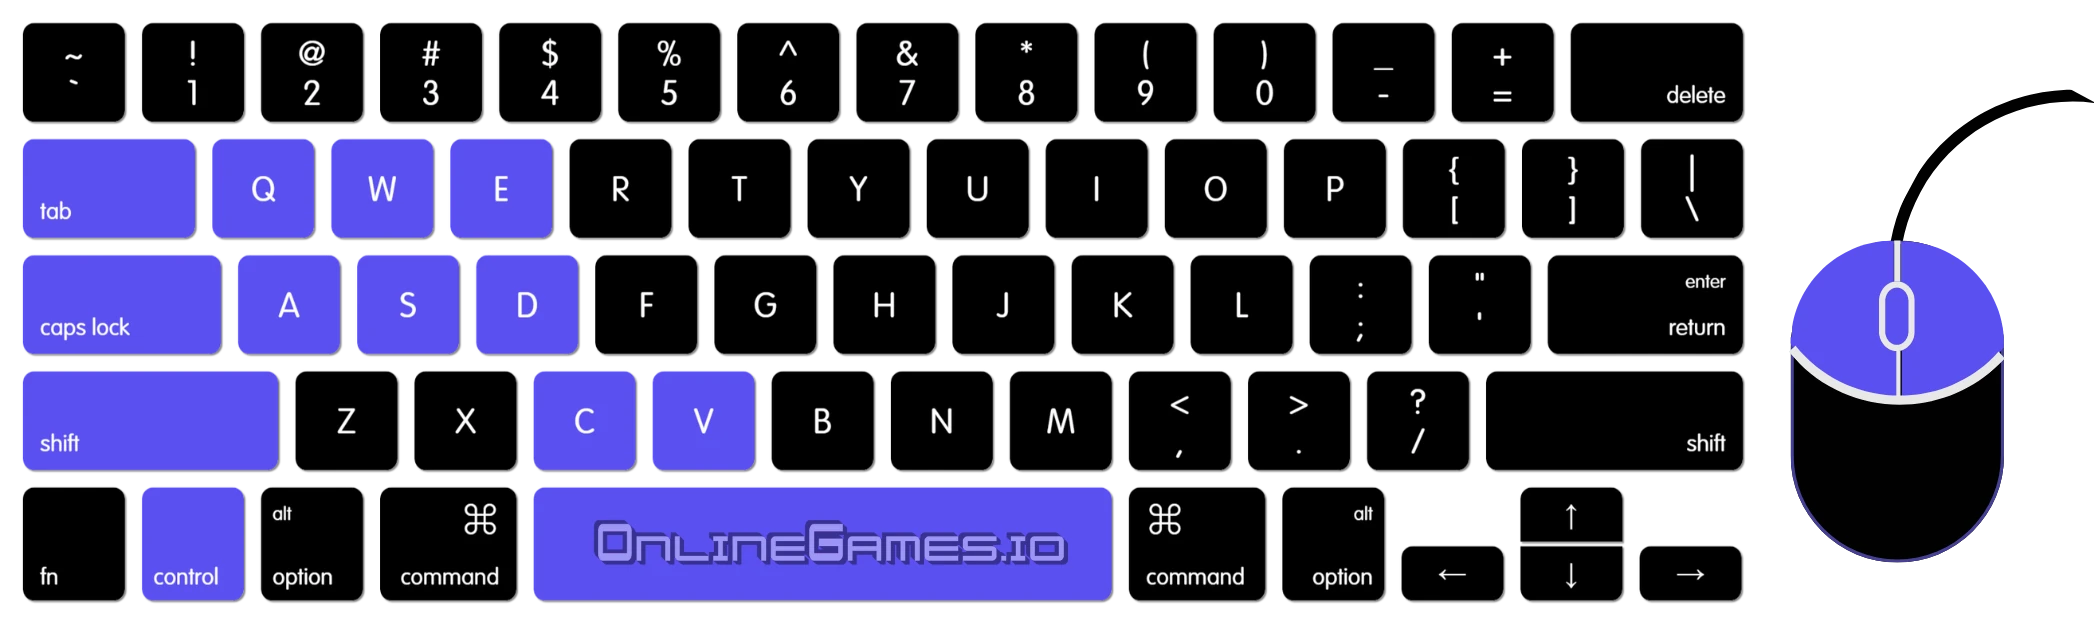 Bloxd.io keyboard controls